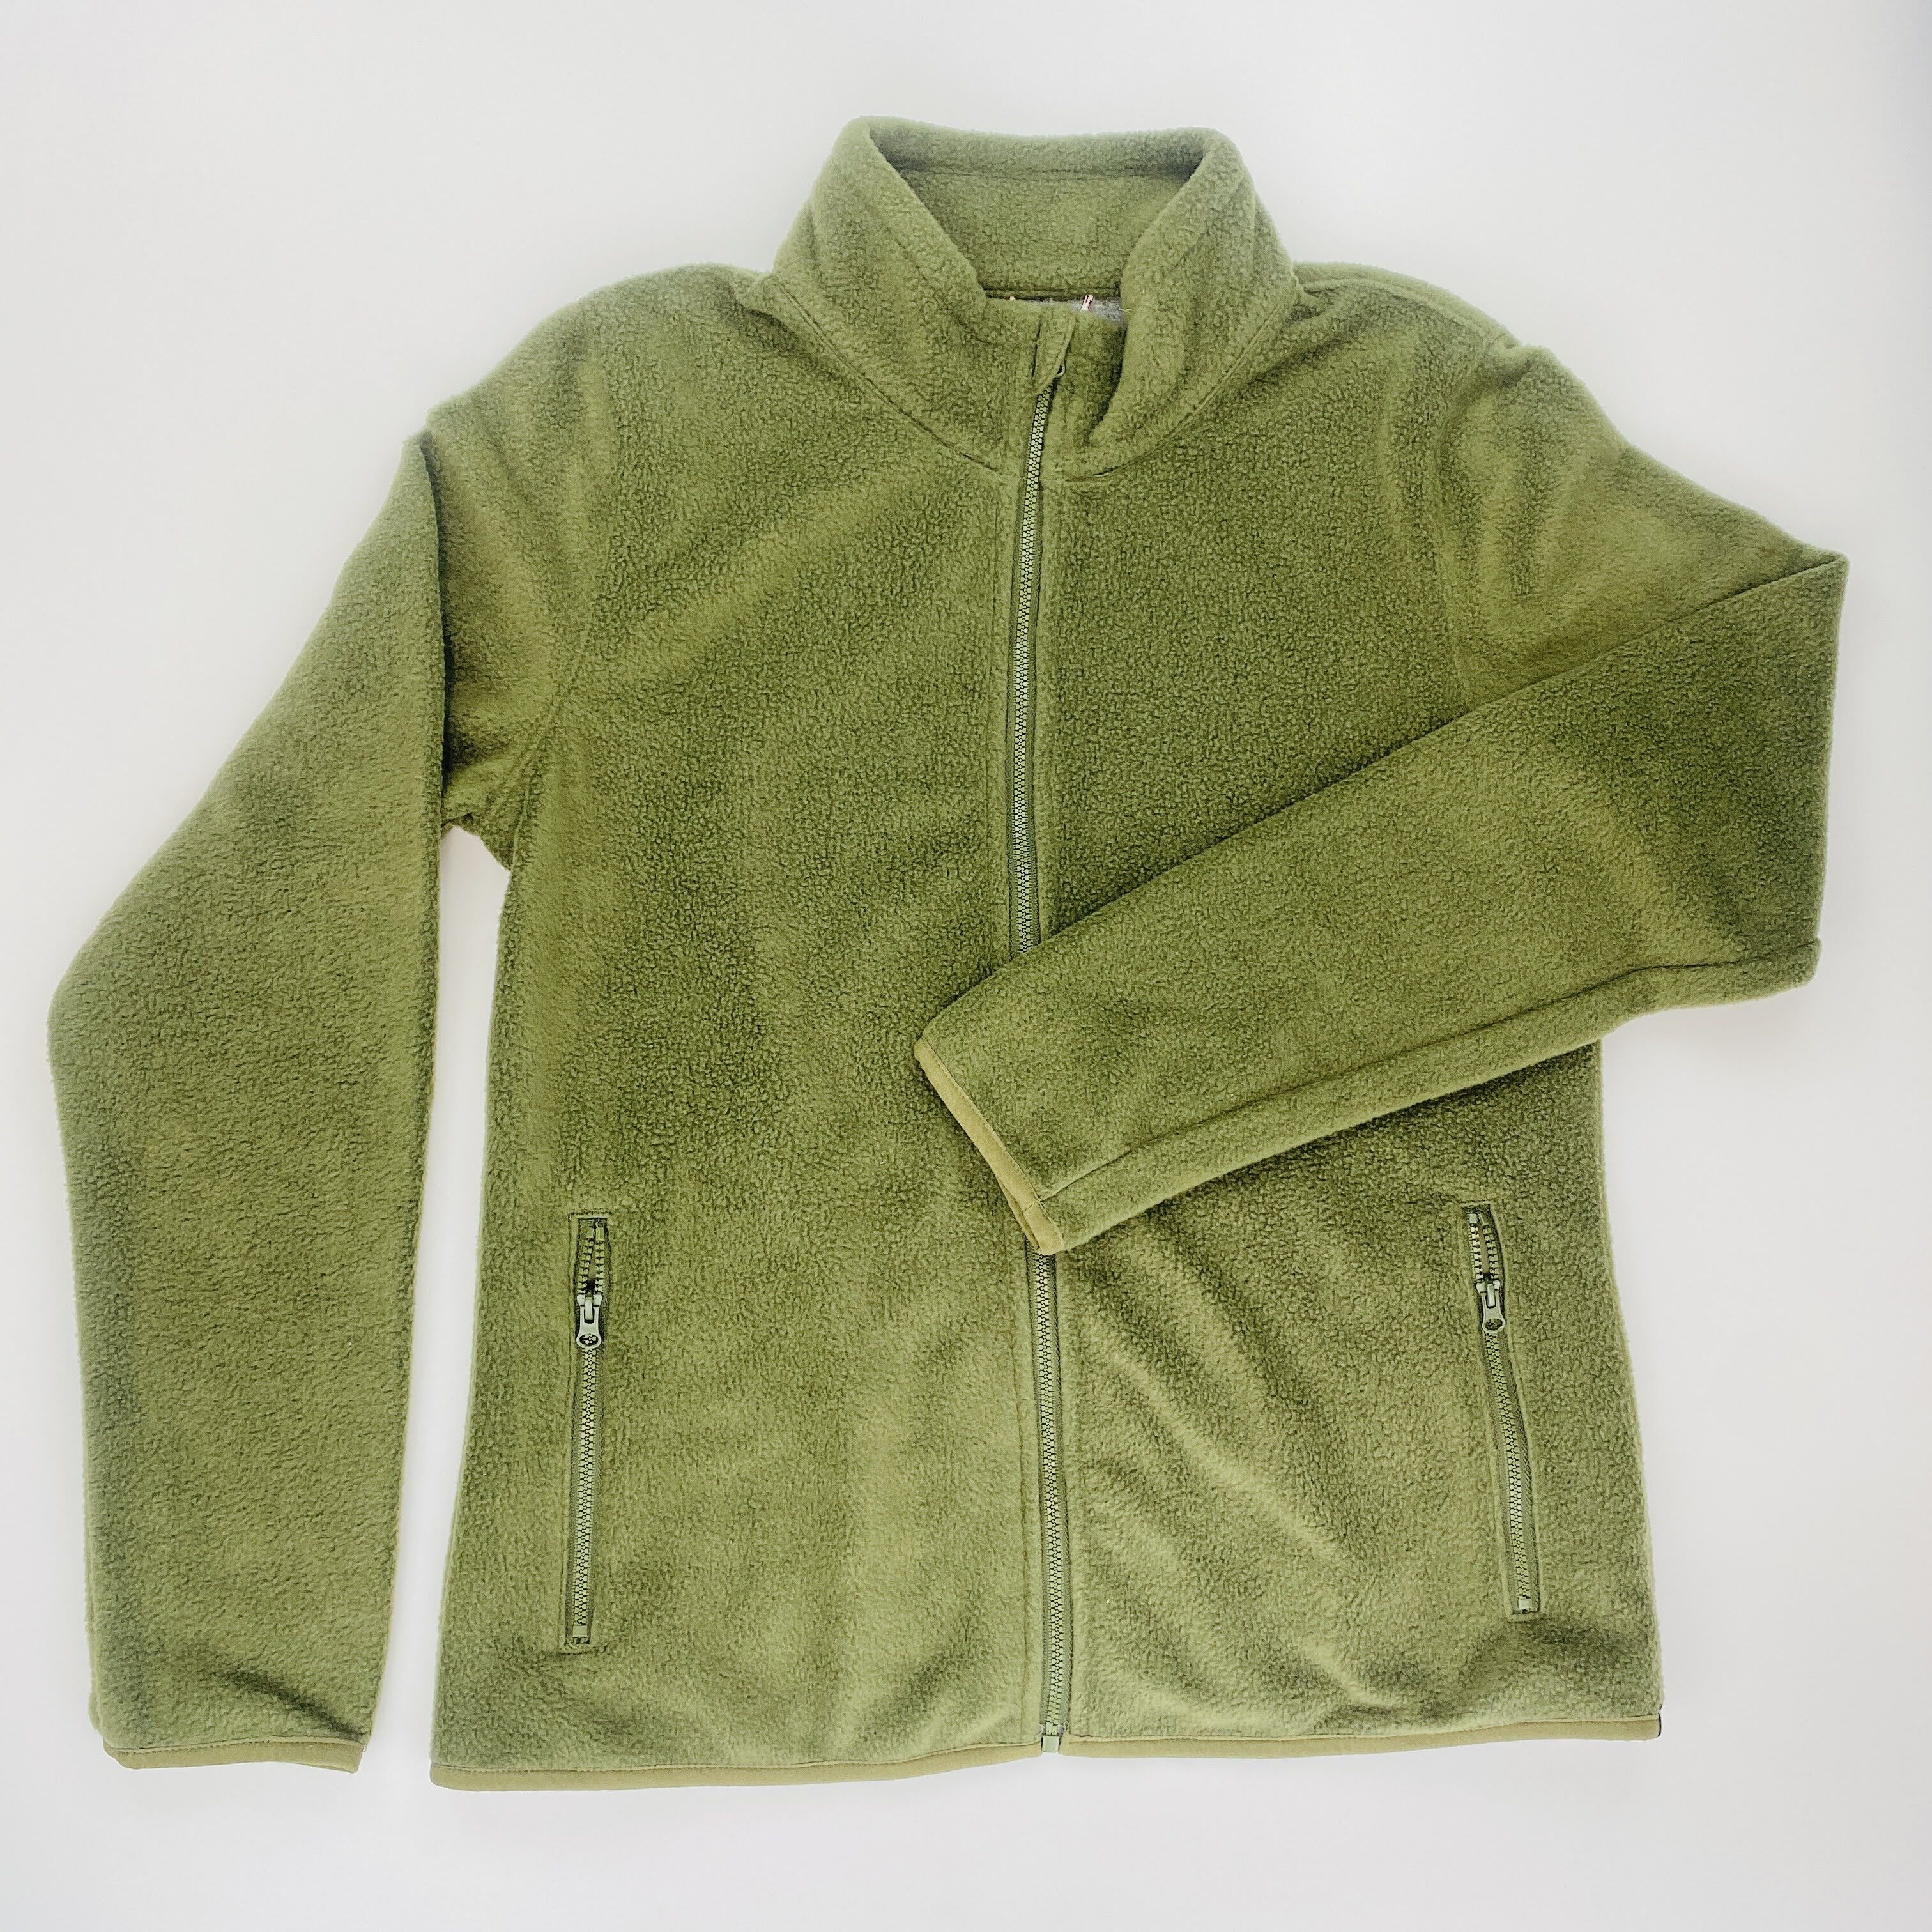 Wrangler Full Zip Fleece Jkt - Seconde main Sweatshirt femme - Vert olive - S | Hardloop